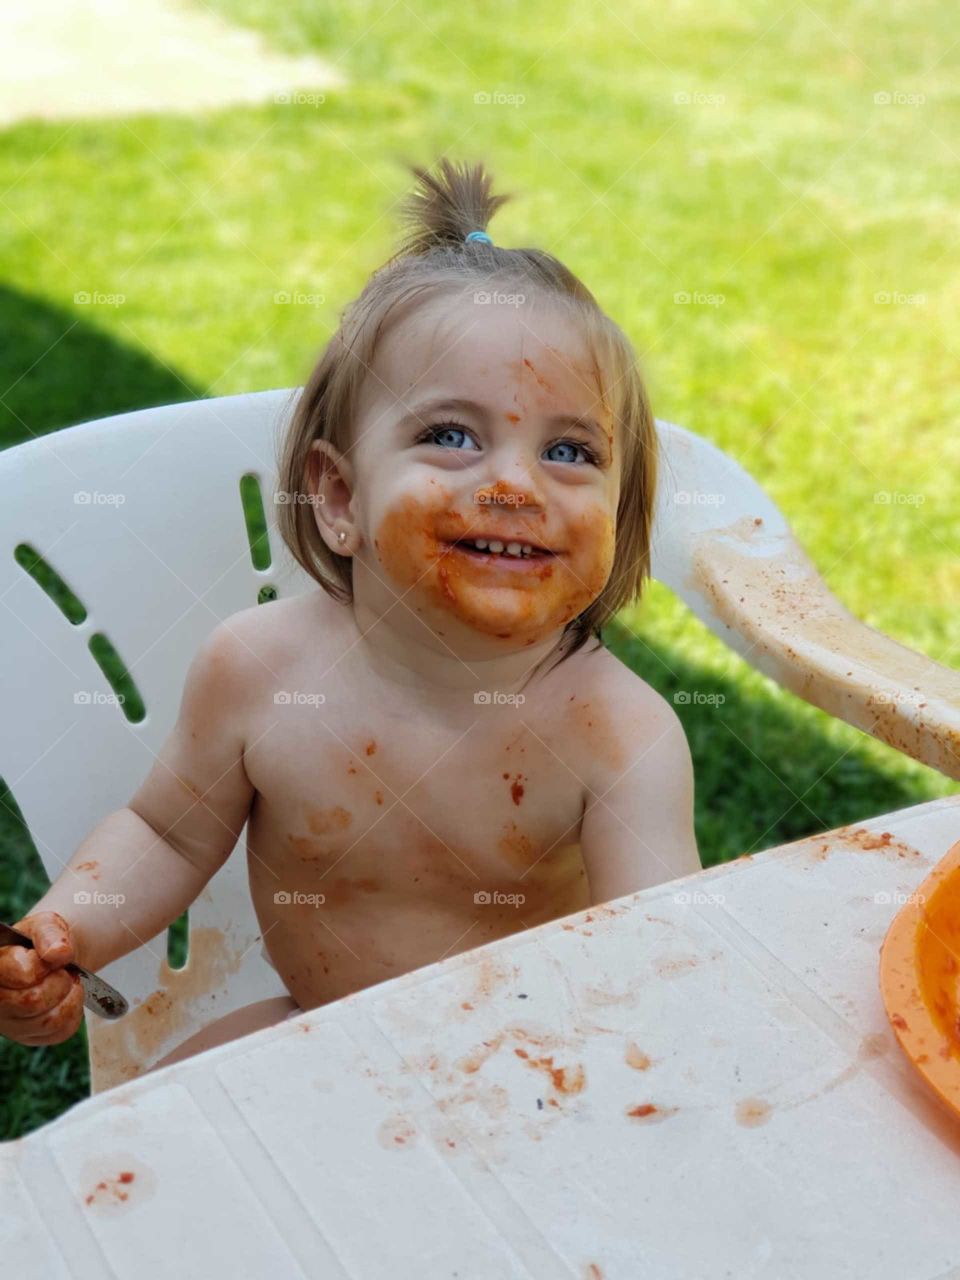 bebés comida familia libertad felicidad amor hijo hija macarrones tomate campo aire libre mellizos alimentación babyledweaning